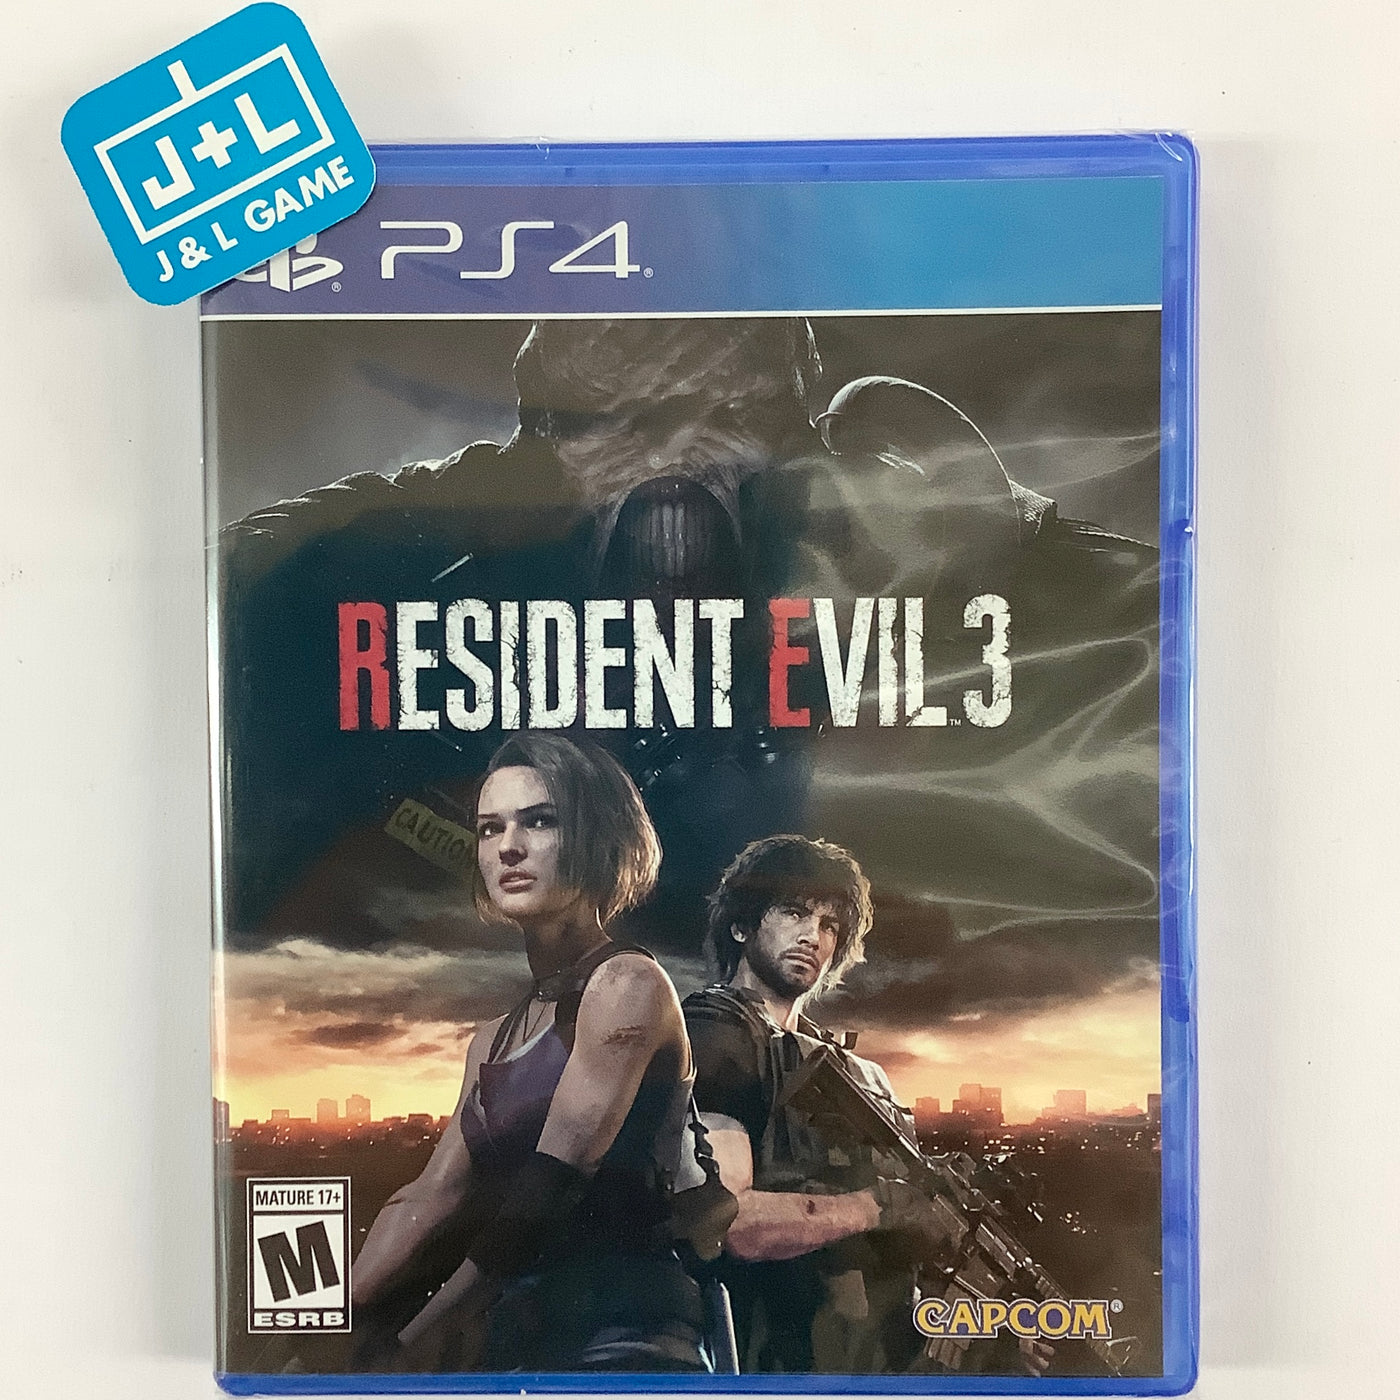 Resident Evil 3 - (PS4) Game | 4 J&L PlayStation